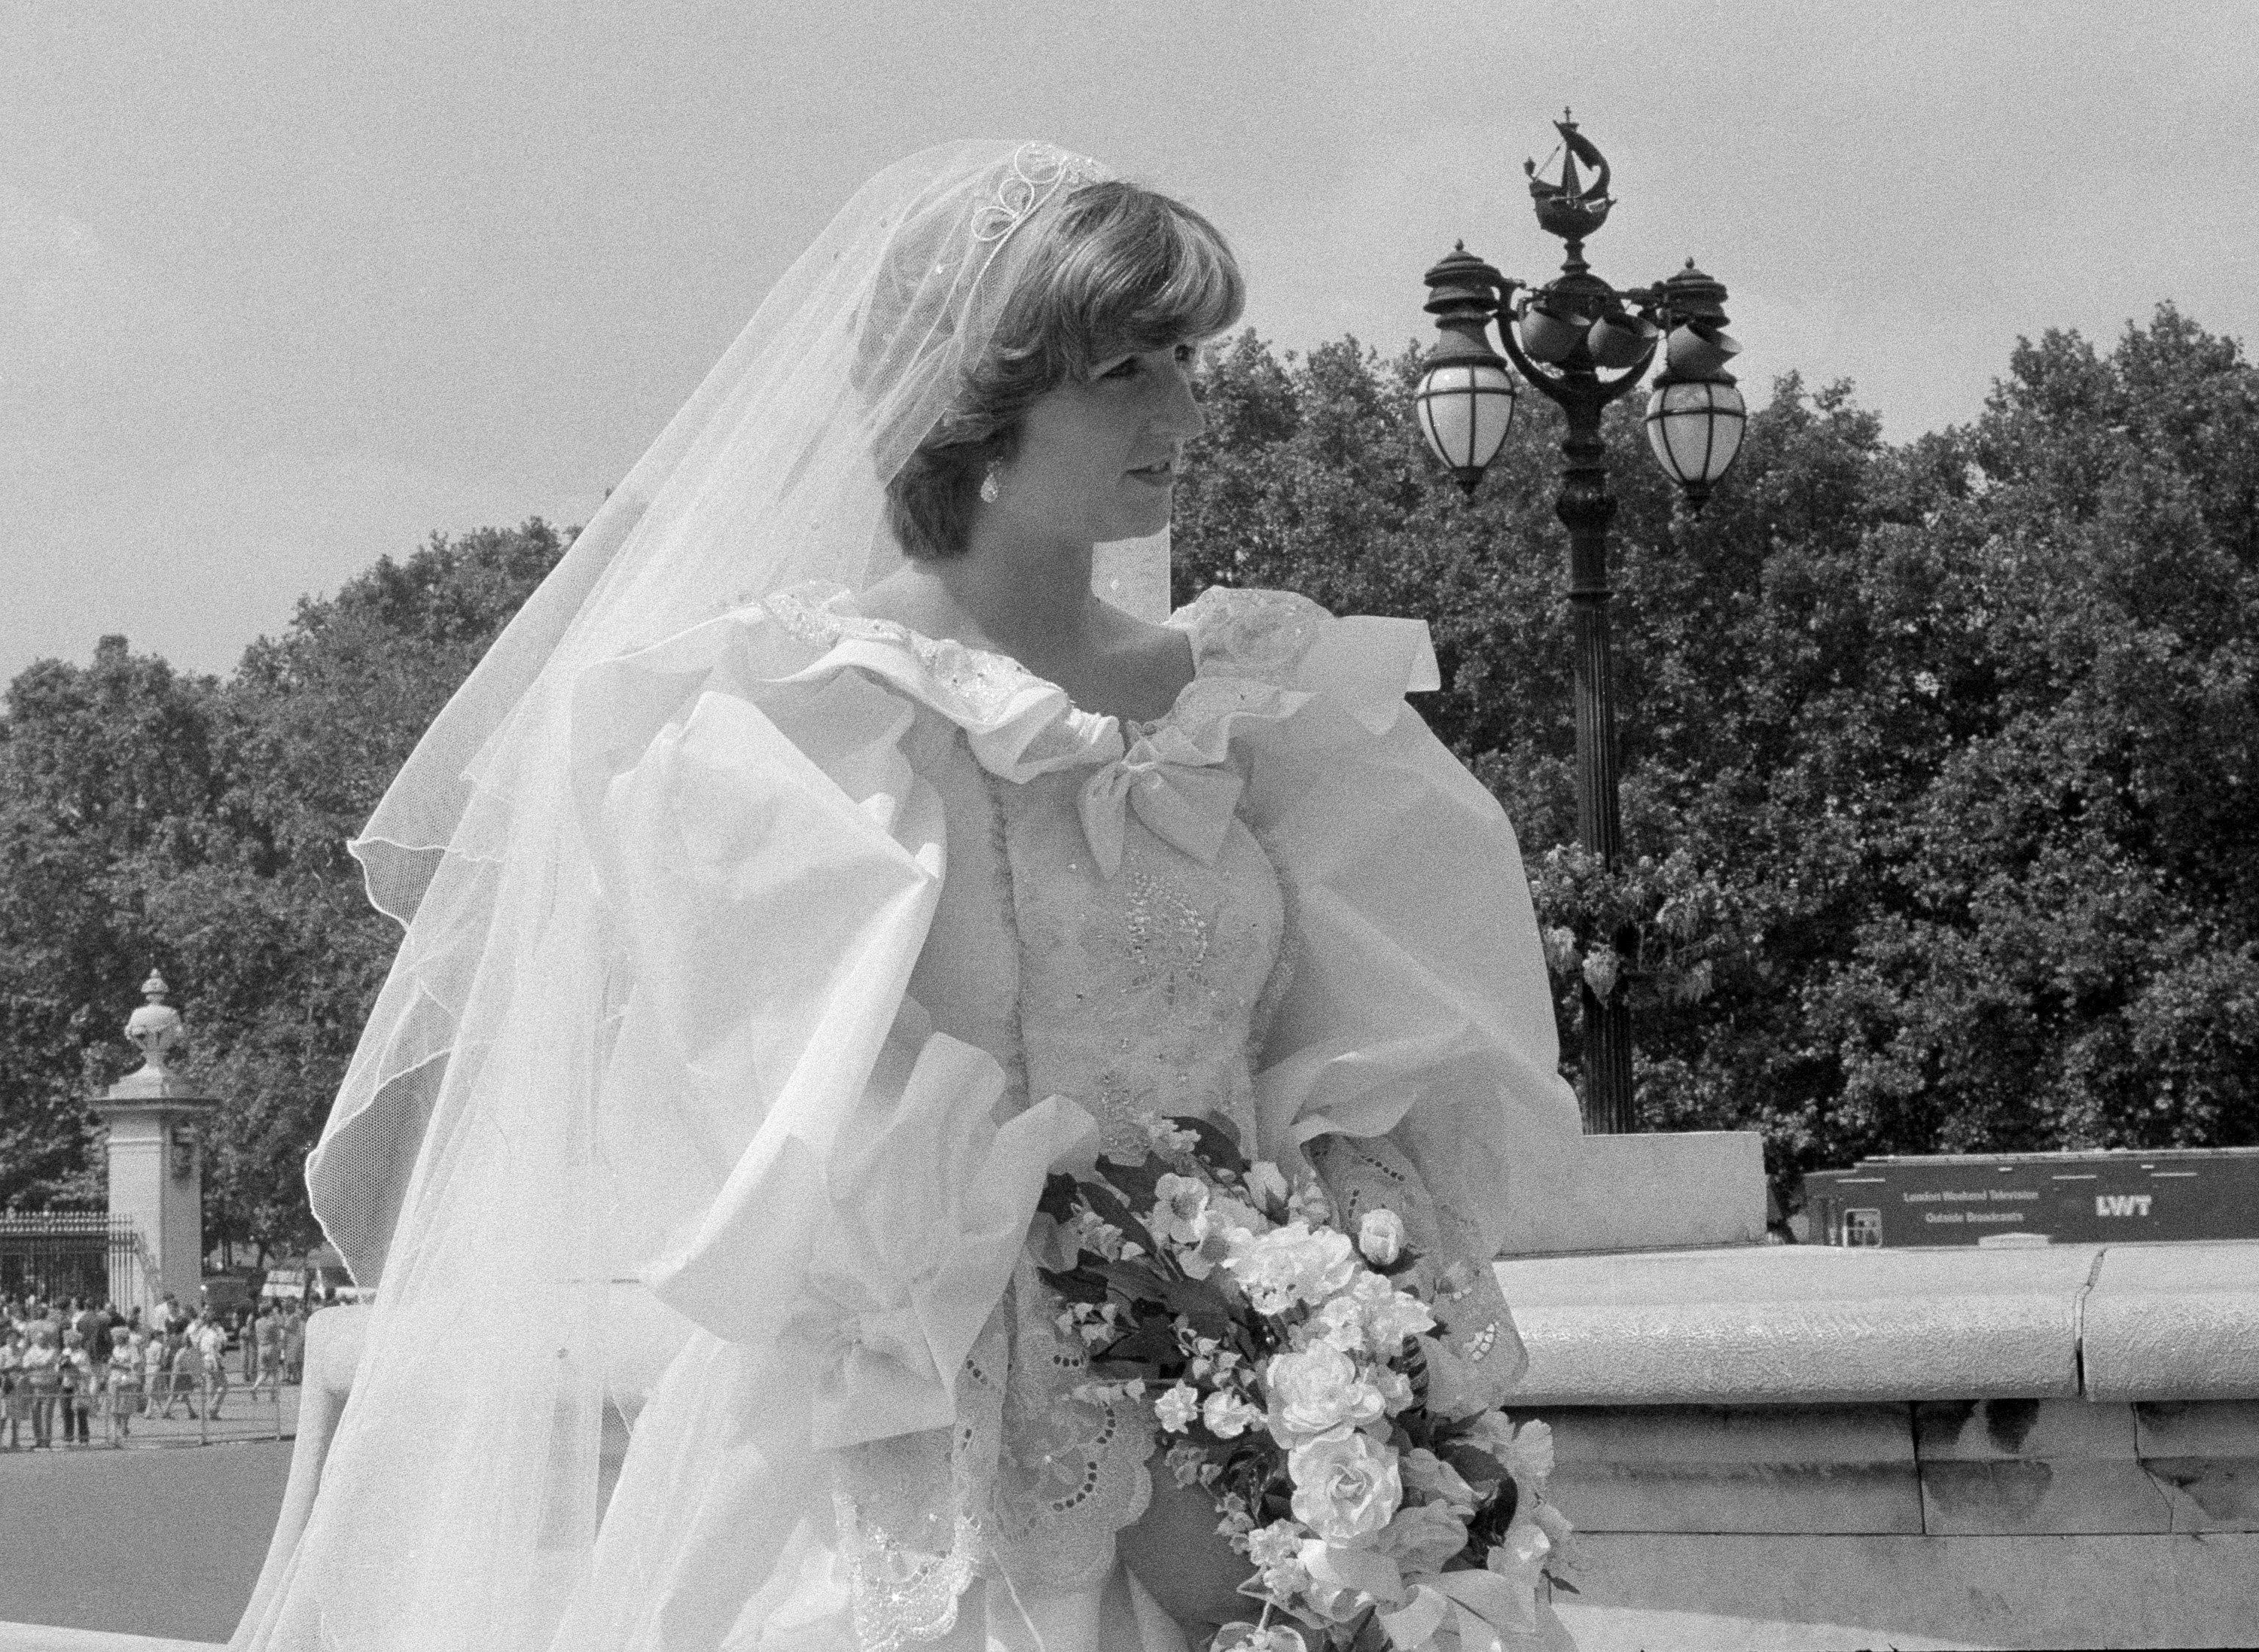 Princess Diana and Prince Charles' Wedding